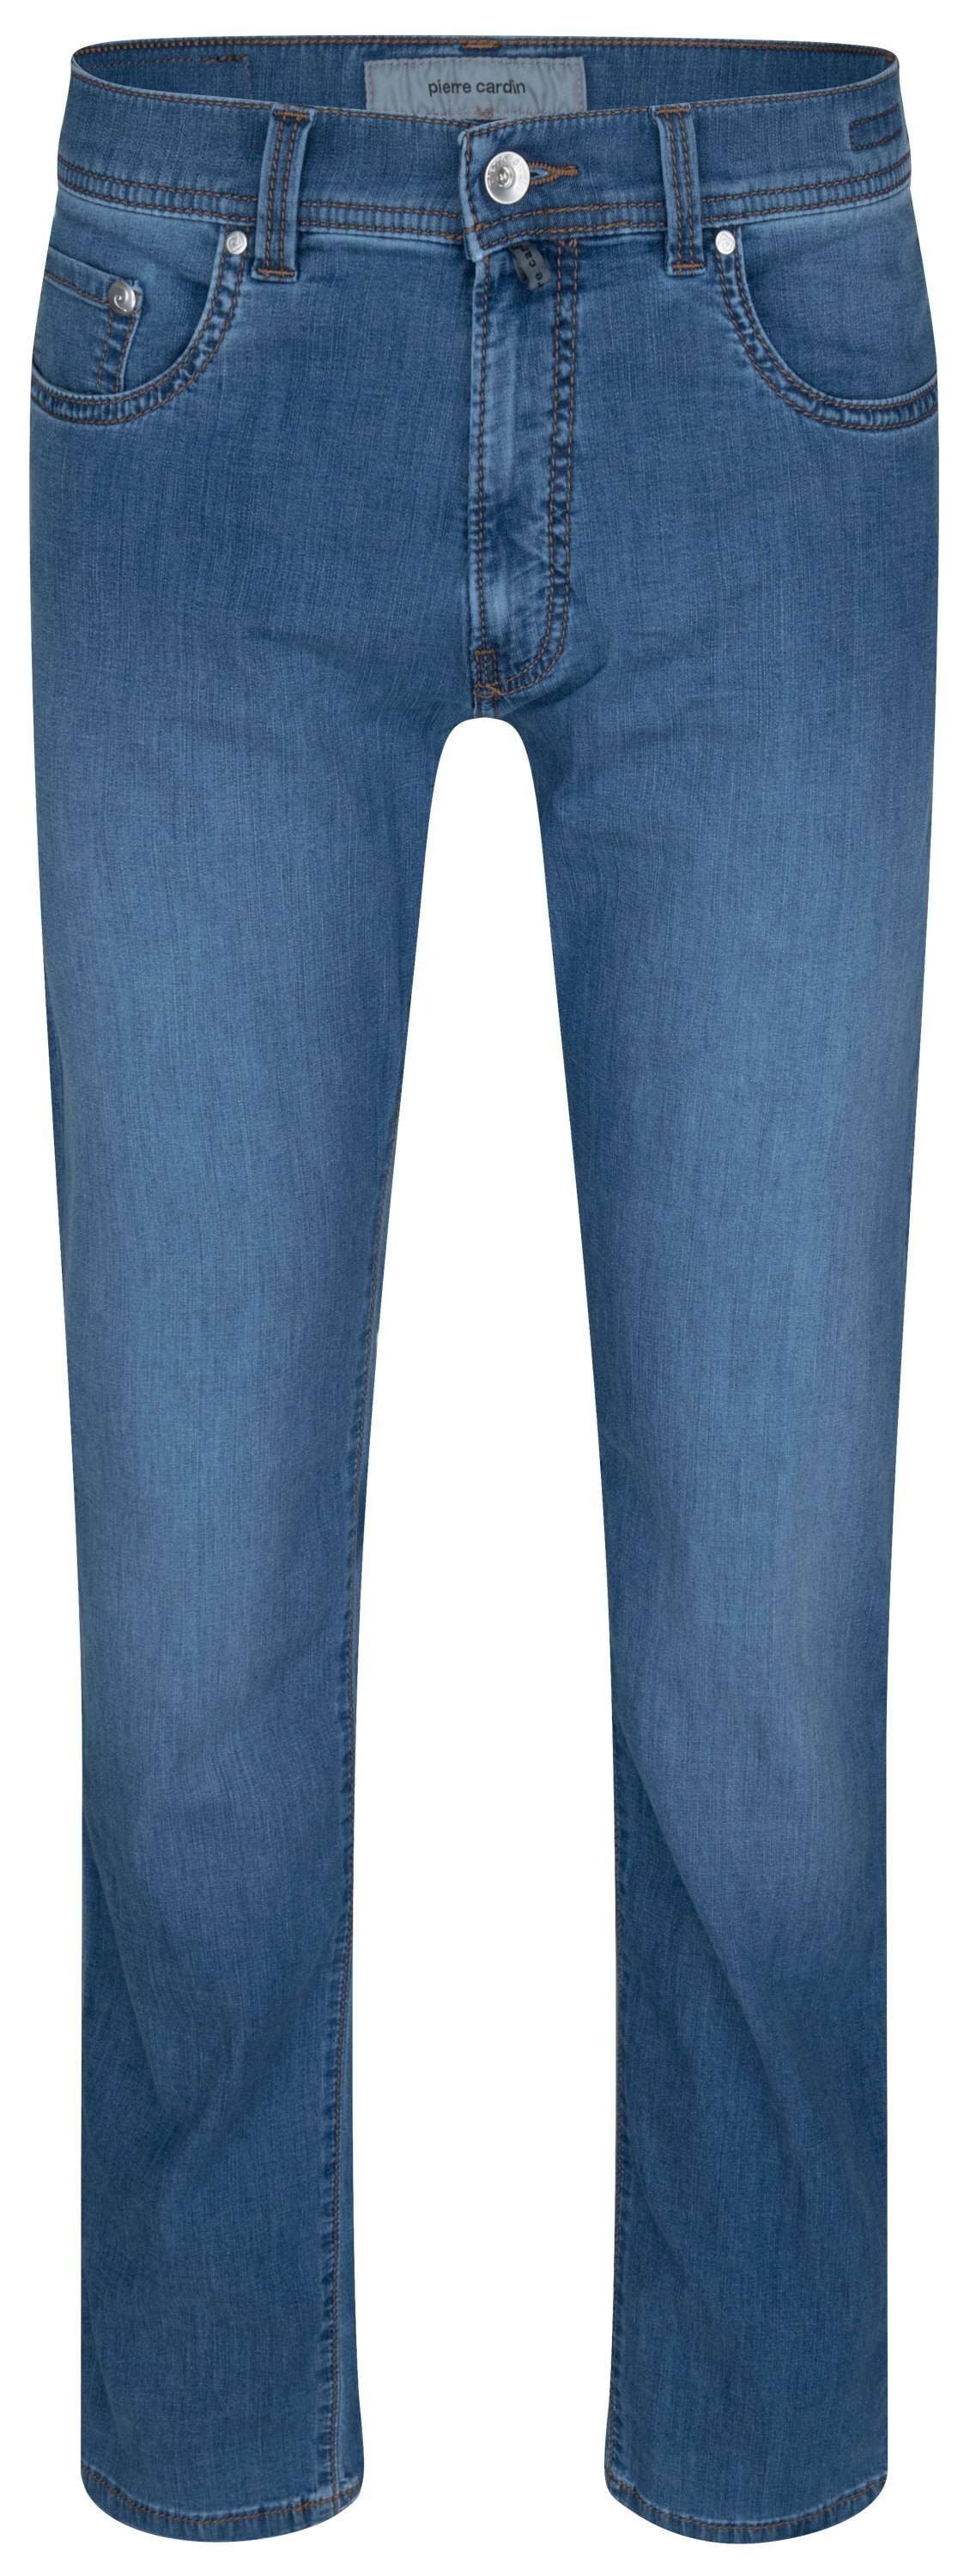 Pierre Cardin 5-Pocket-Jeans PIERRE CARDIN LYON TAPERED ocean blue fashion 34510 7730.6837 - FUTURE | Jeans